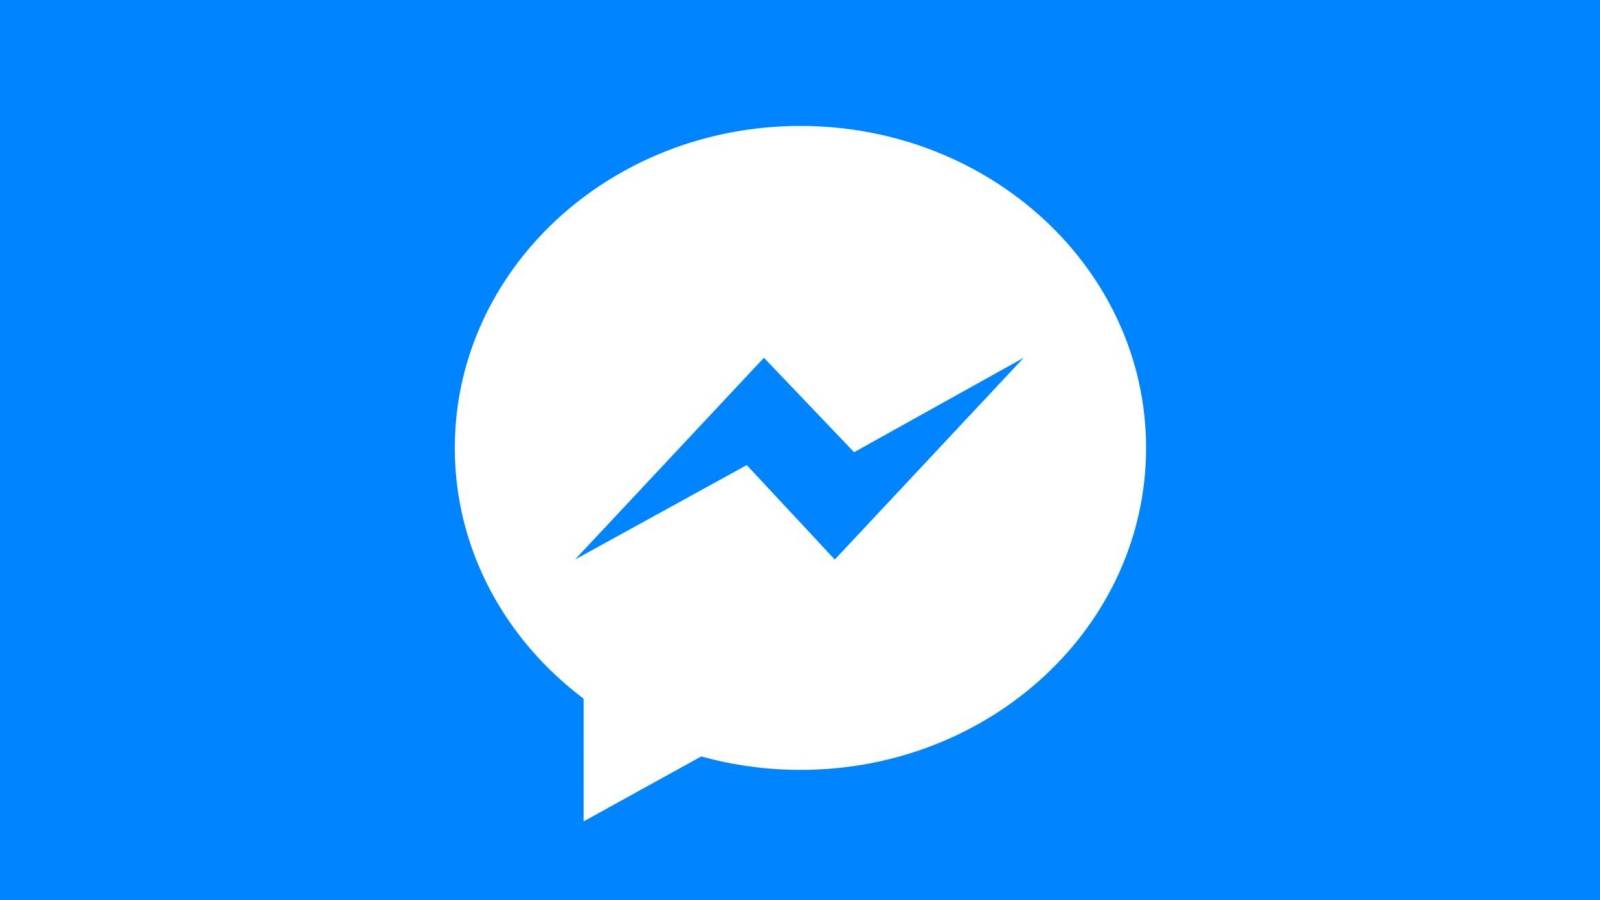 Facebook Messenger update nou aplicatie toate persoanele